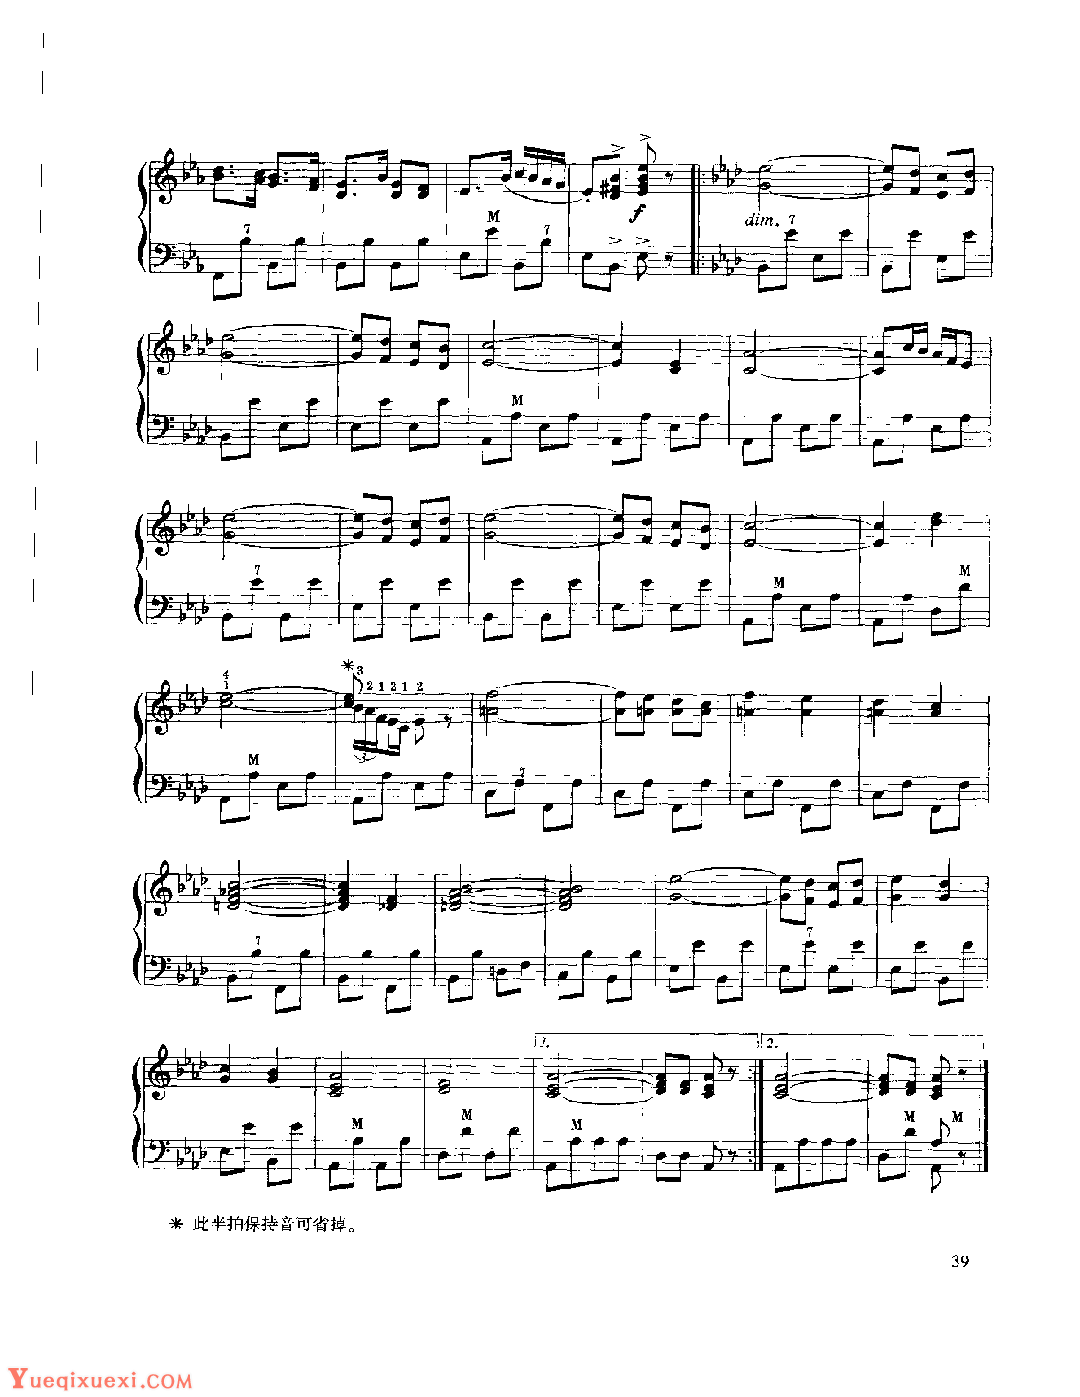 现代手风琴流行乐曲《故依克西勒之风(波尔卡)》维勒·格拉黑曲